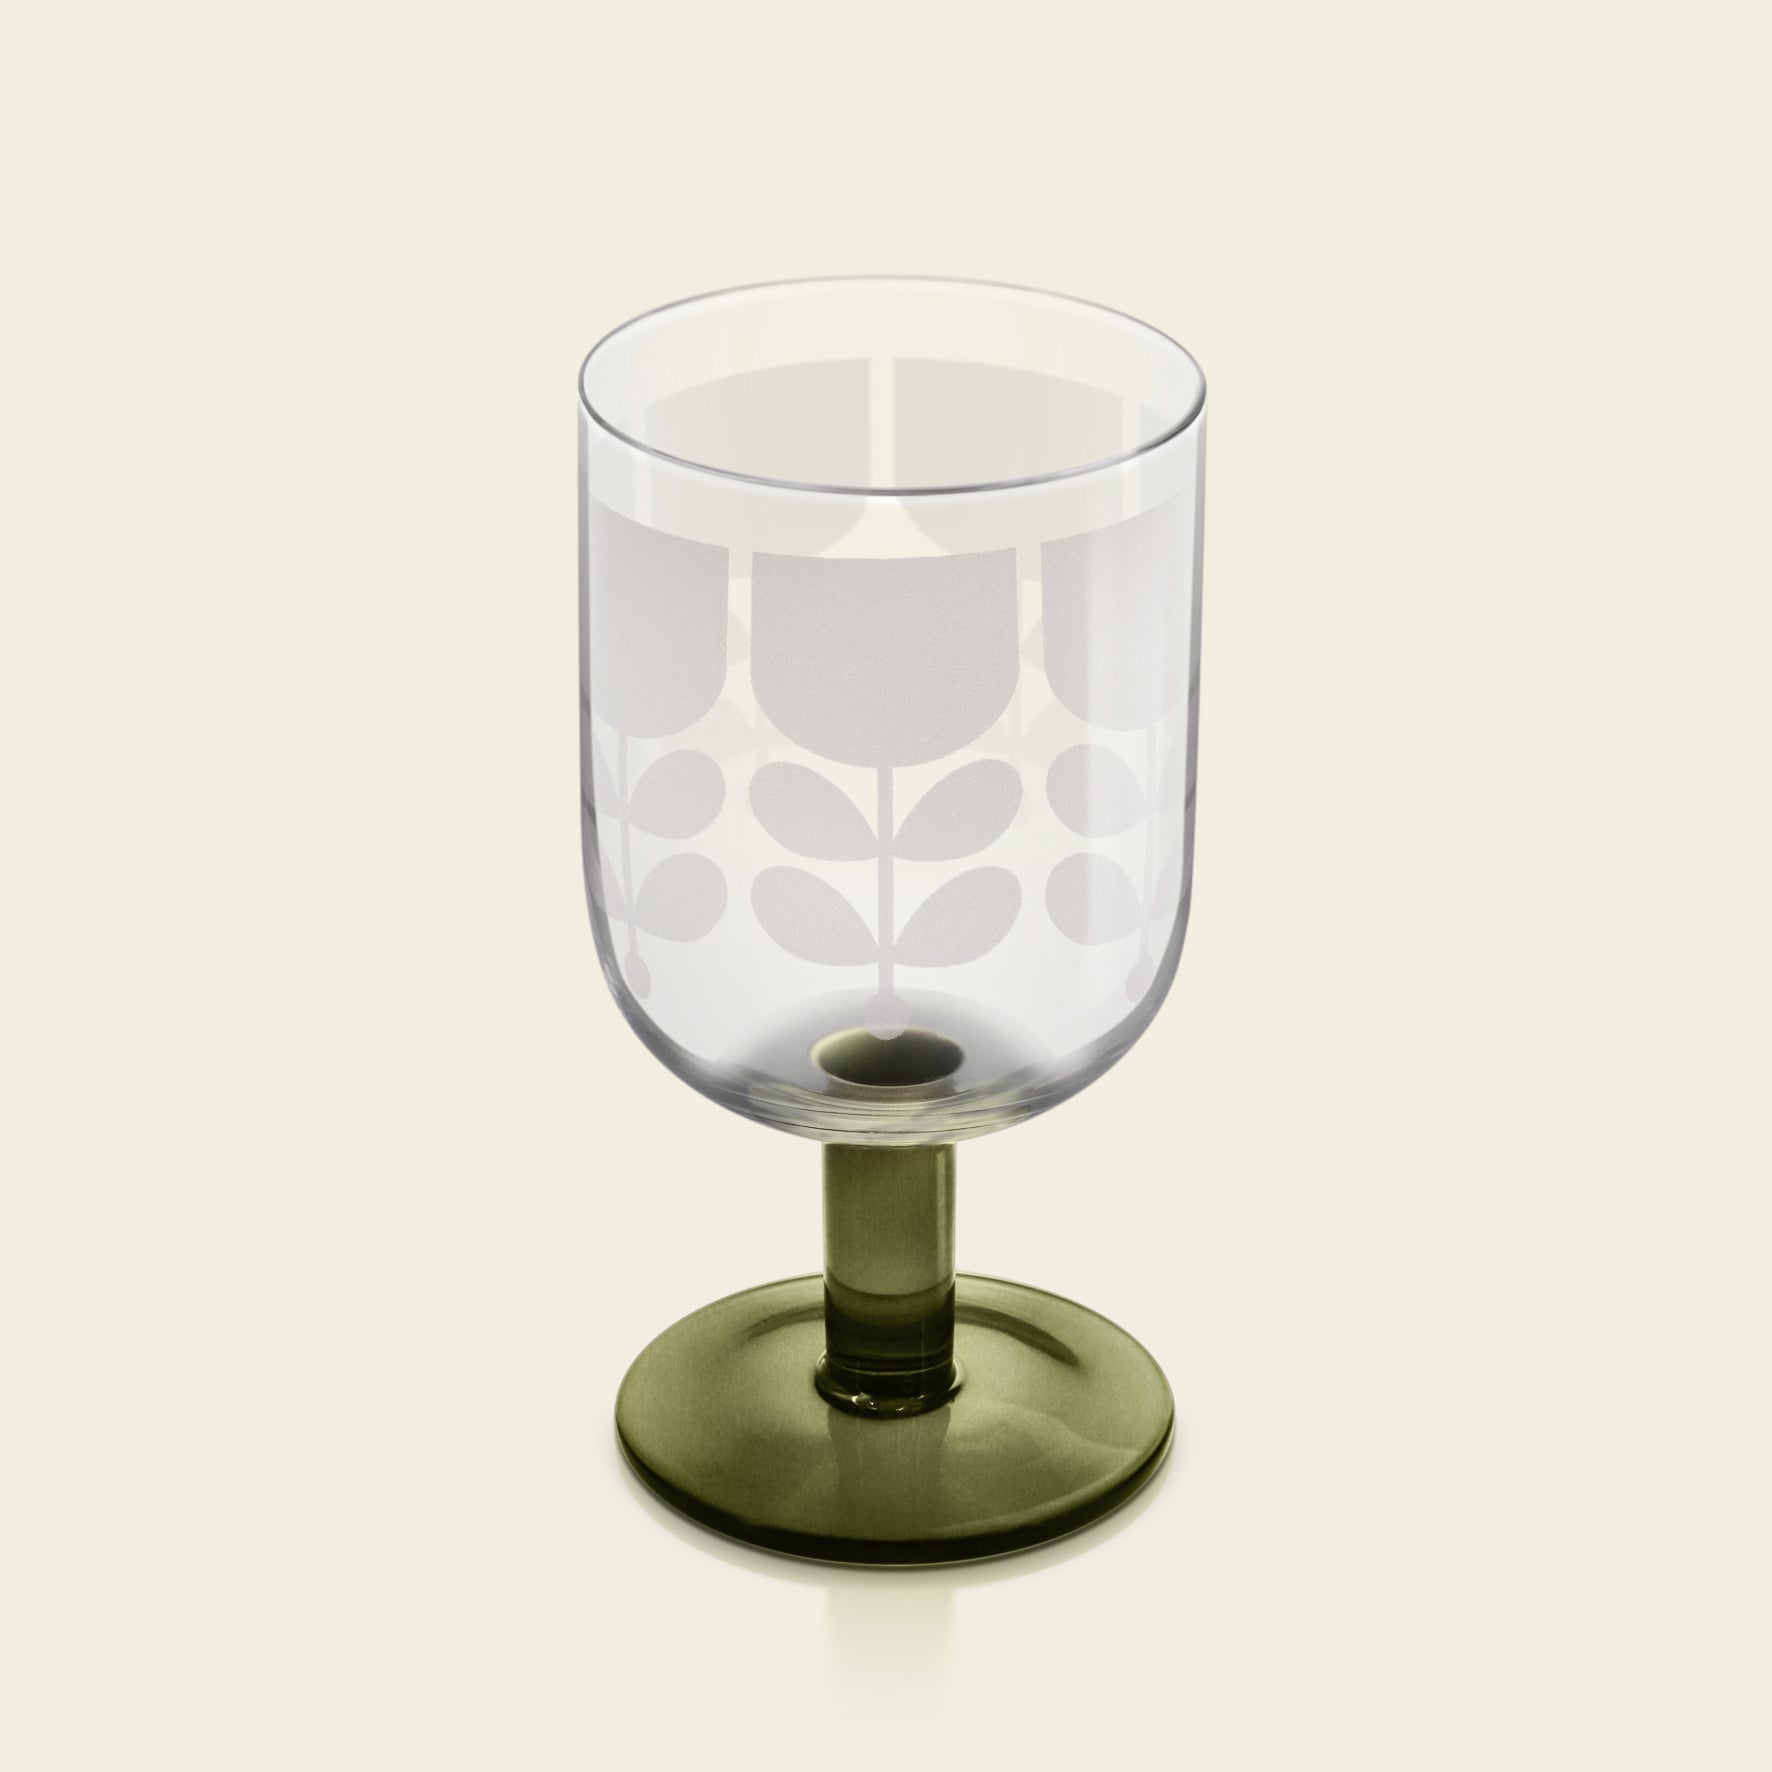 Grønt  vinglass fra Orla Kiely